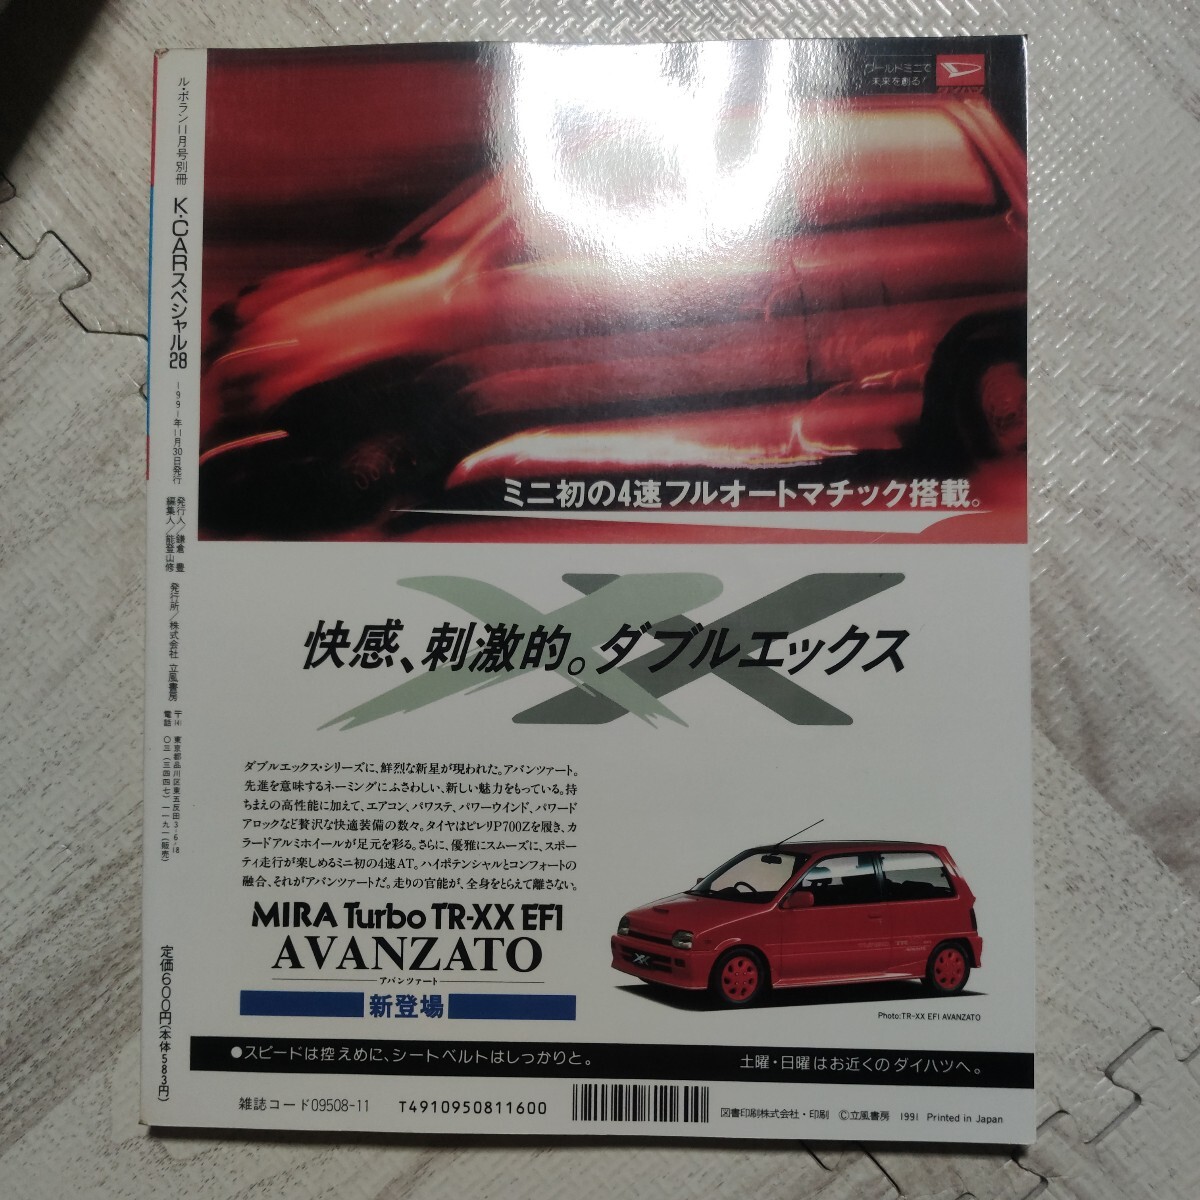 K-CARスペシャル 隔月VOL28 Kスポーツ スズキカプチーノ 雑誌 車_画像2